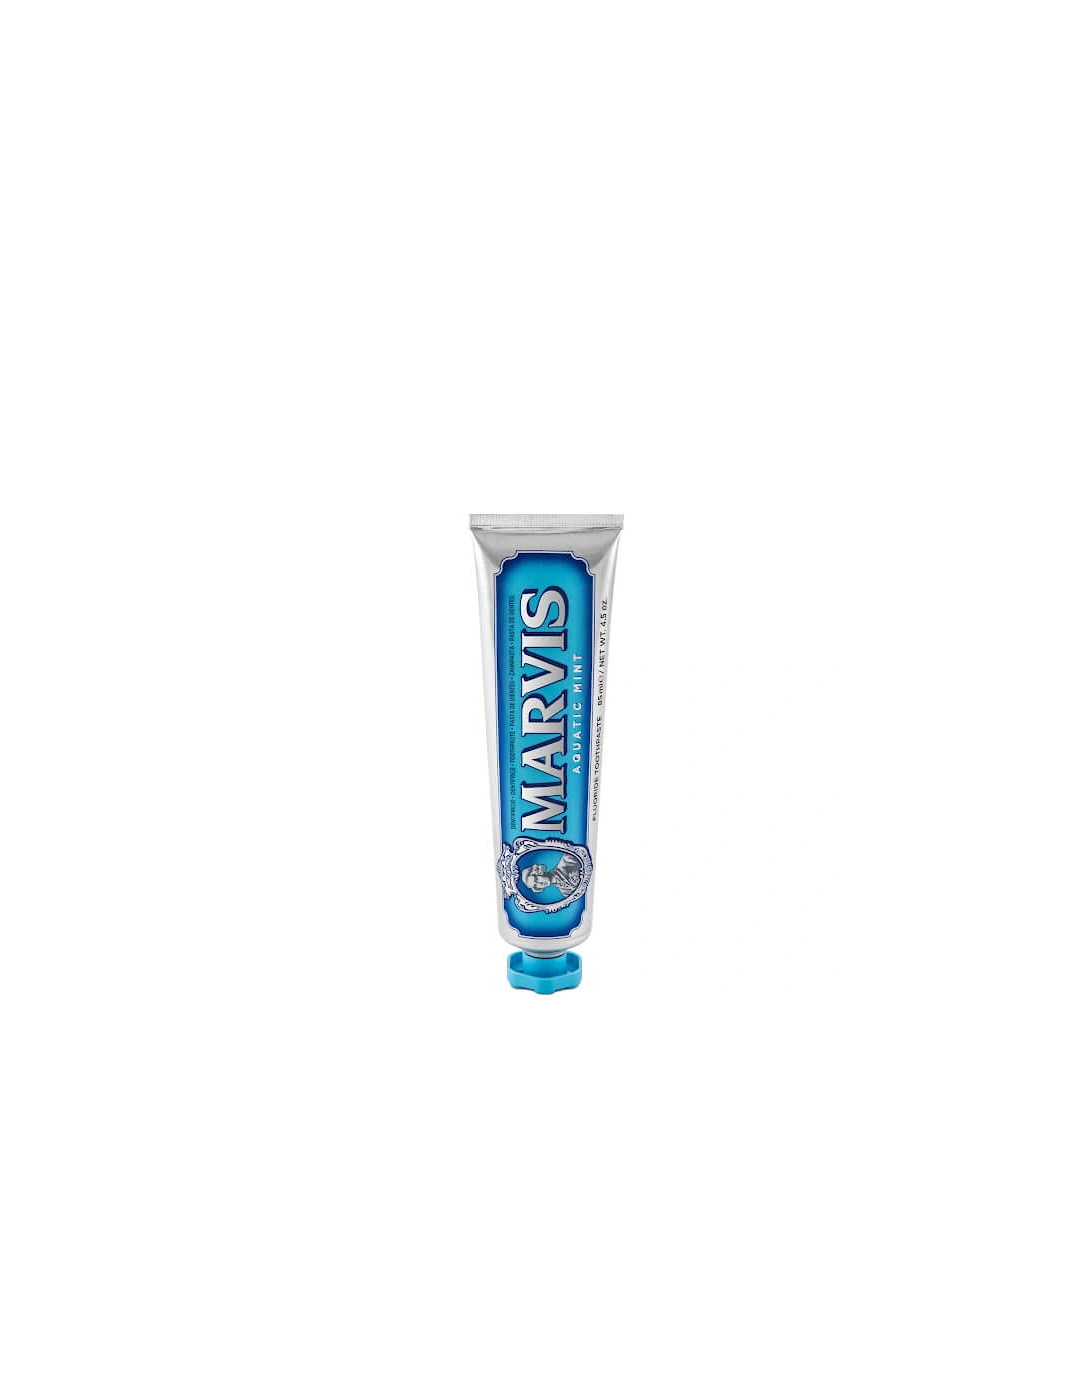 Aquatic Mint Toothpaste (85ml) - - Aquatic Mint Toothpaste (85ml) - Ossie - Aquatic Mint Toothpaste (85ml) - Ossie, 2 of 1